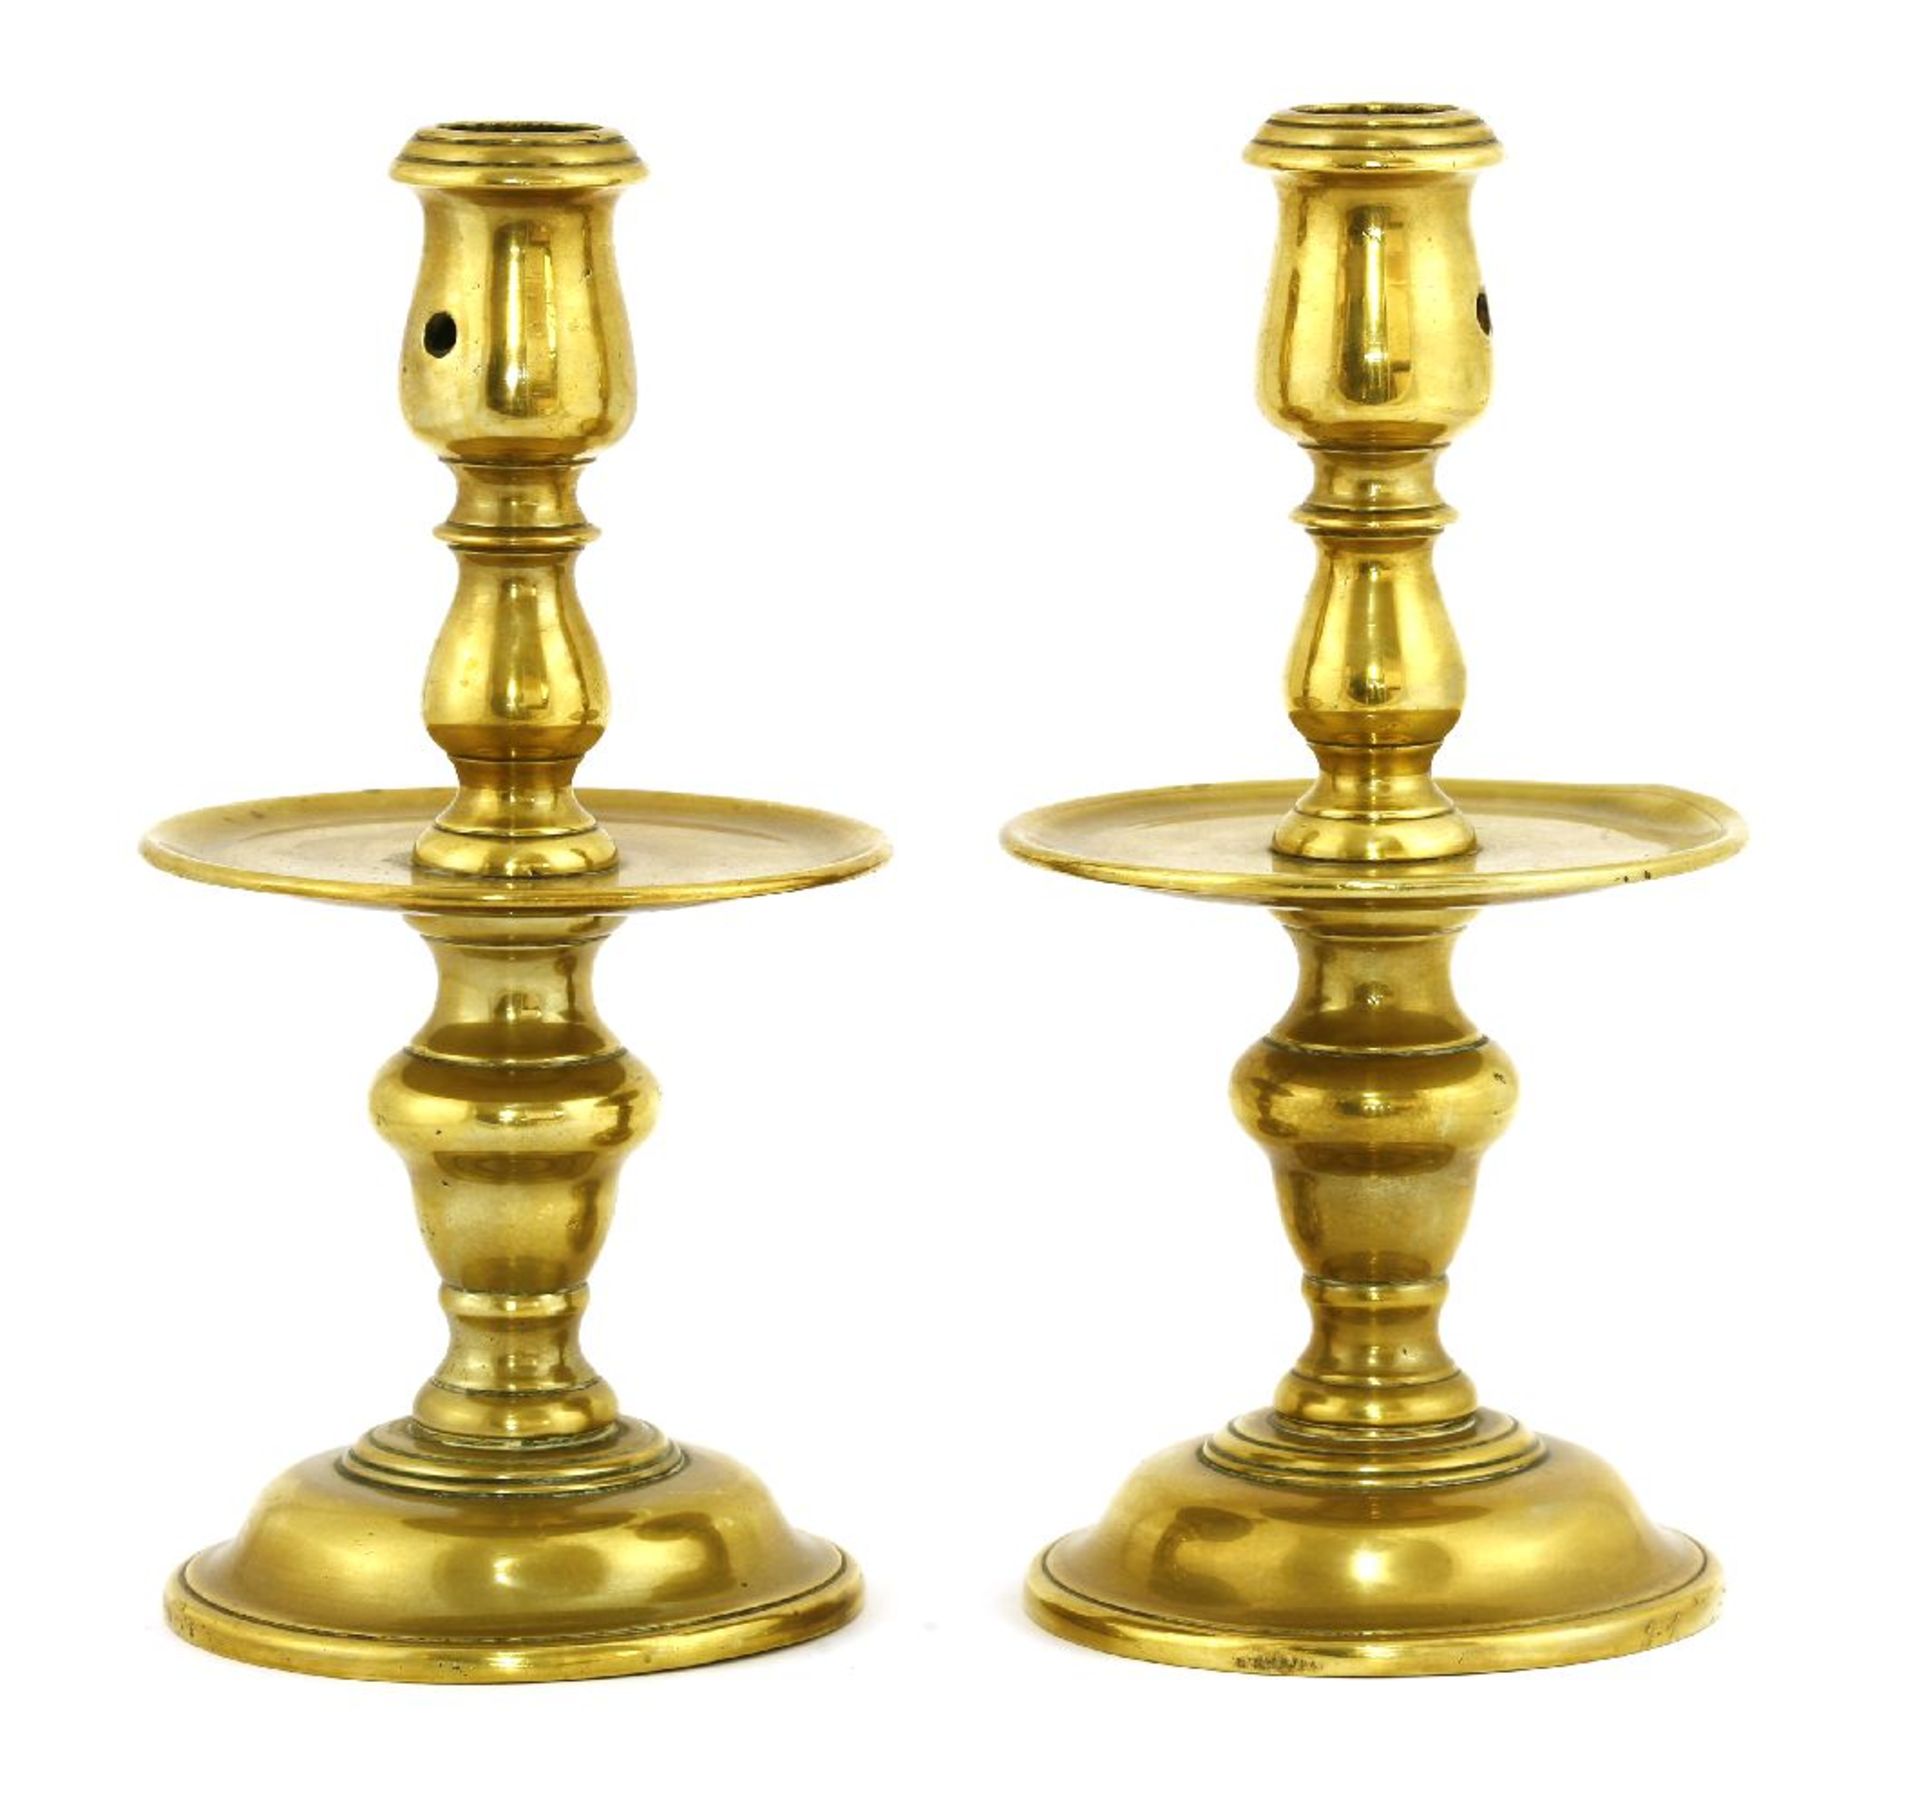 A pair of Heemskerk-type brass candlesticks,early 18th century, Dutch, 22cm high (2)